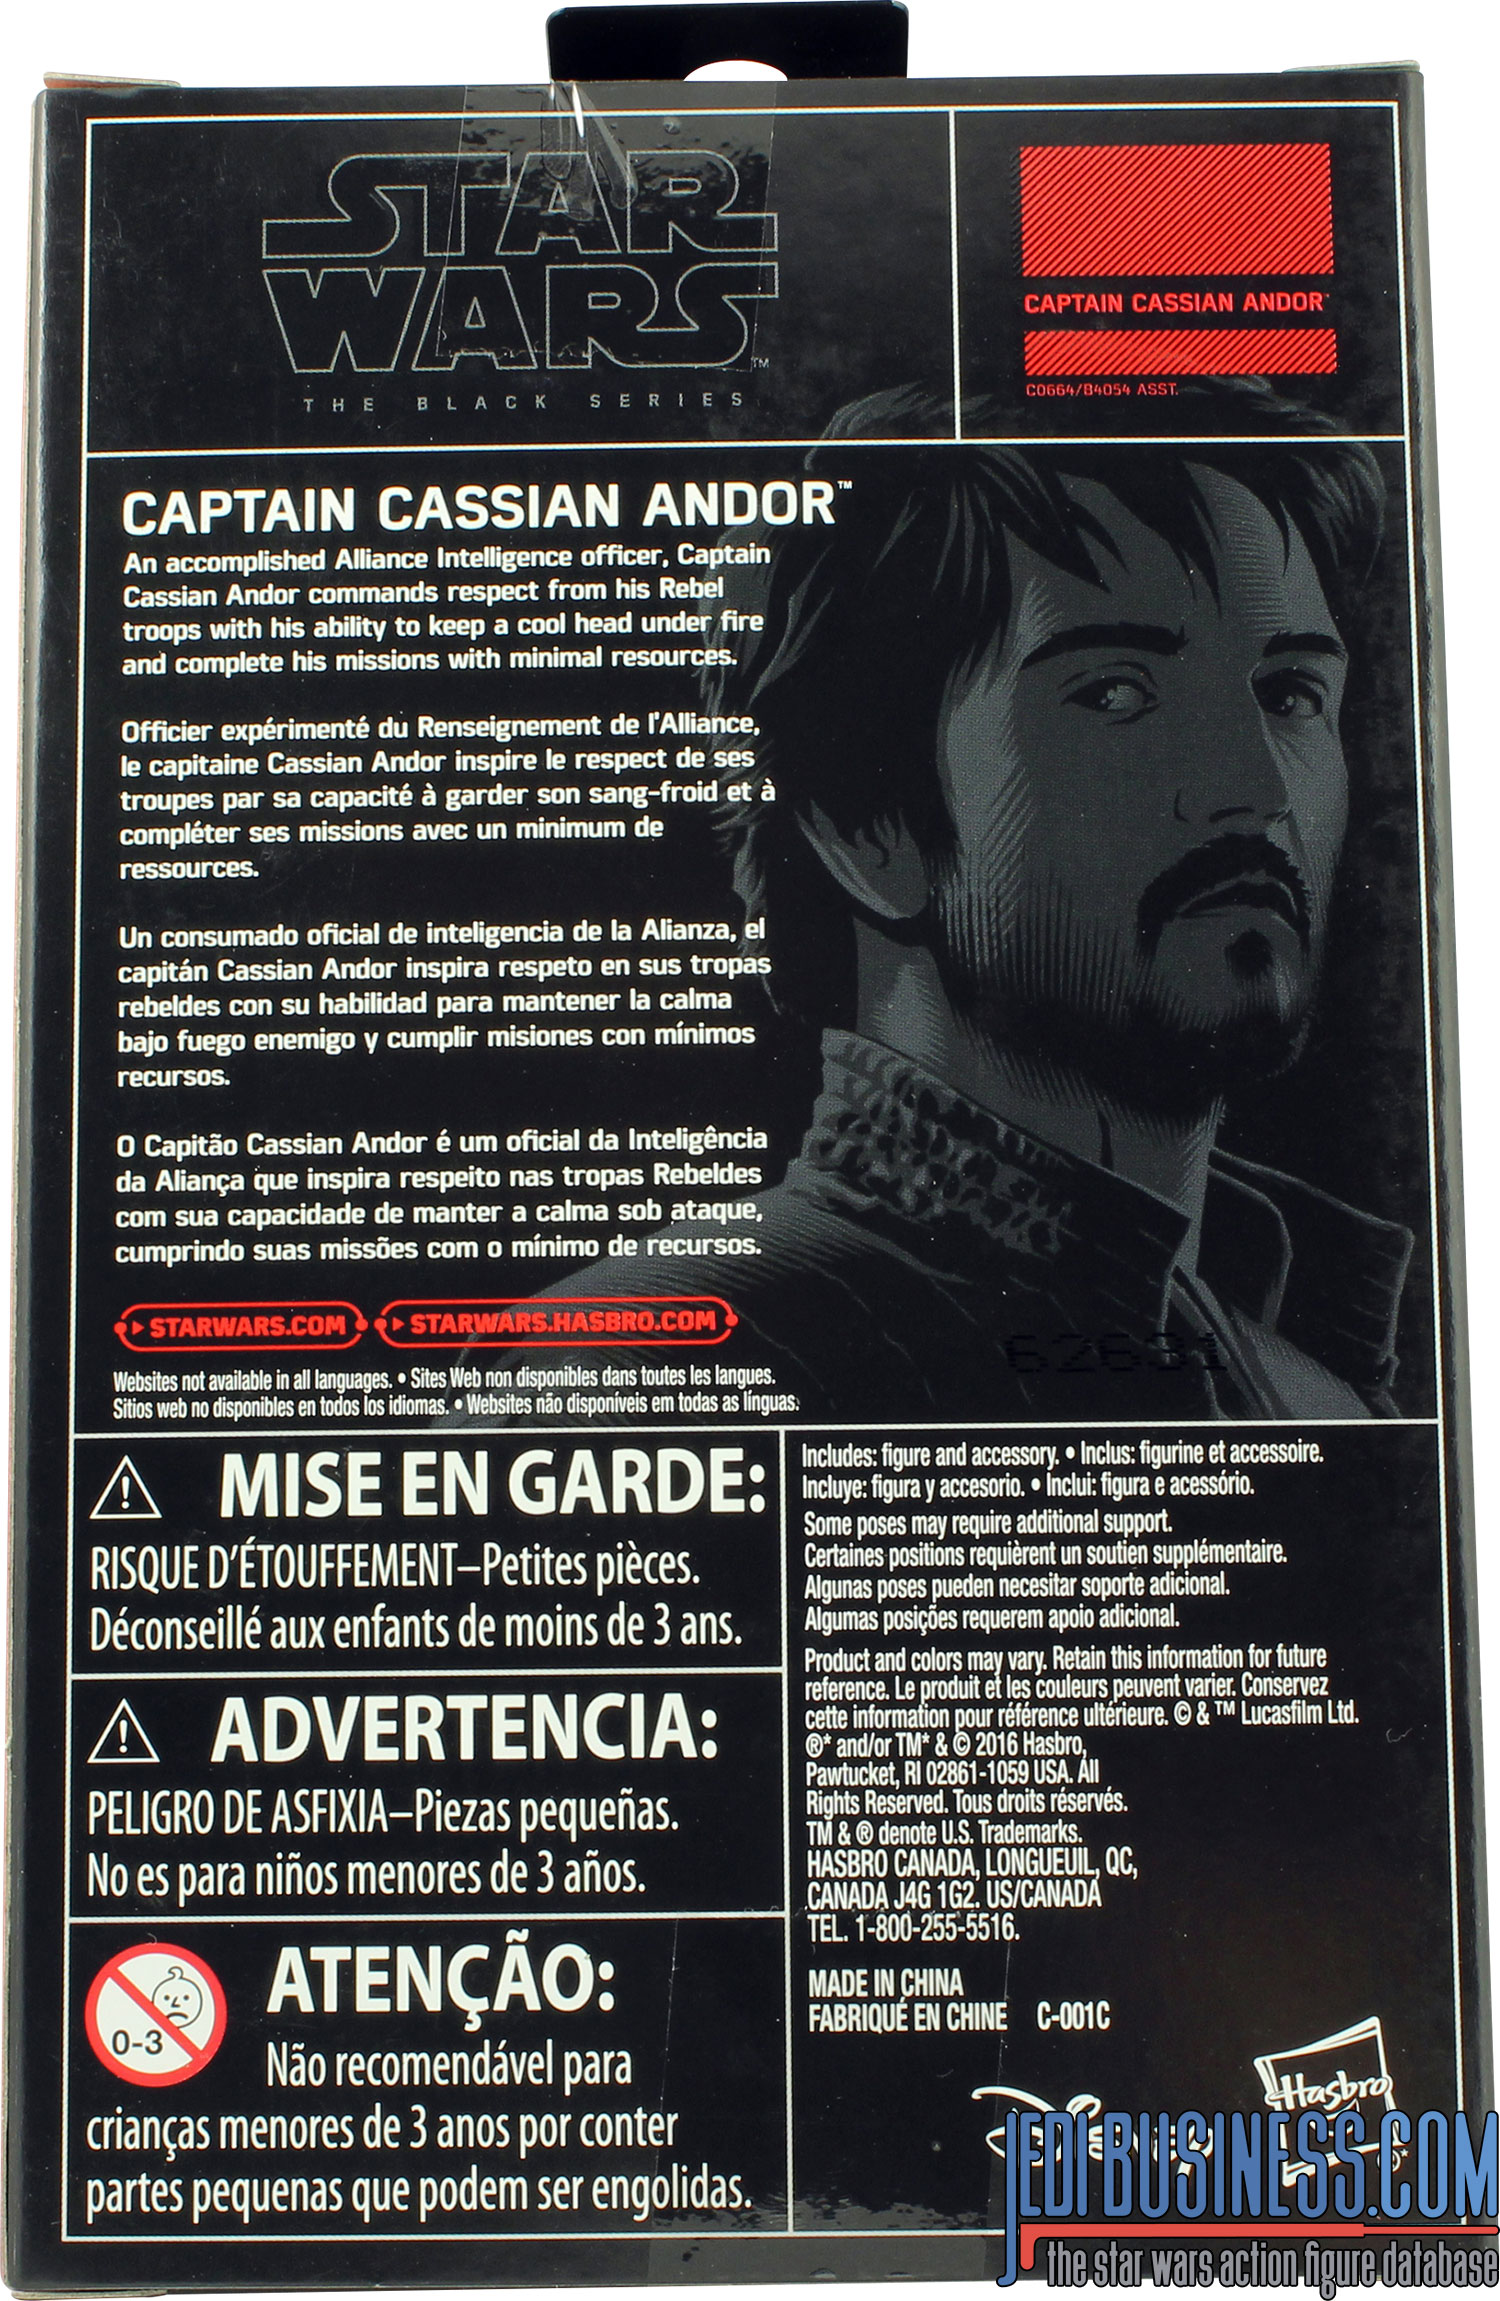 Cassian Andor Rogue One